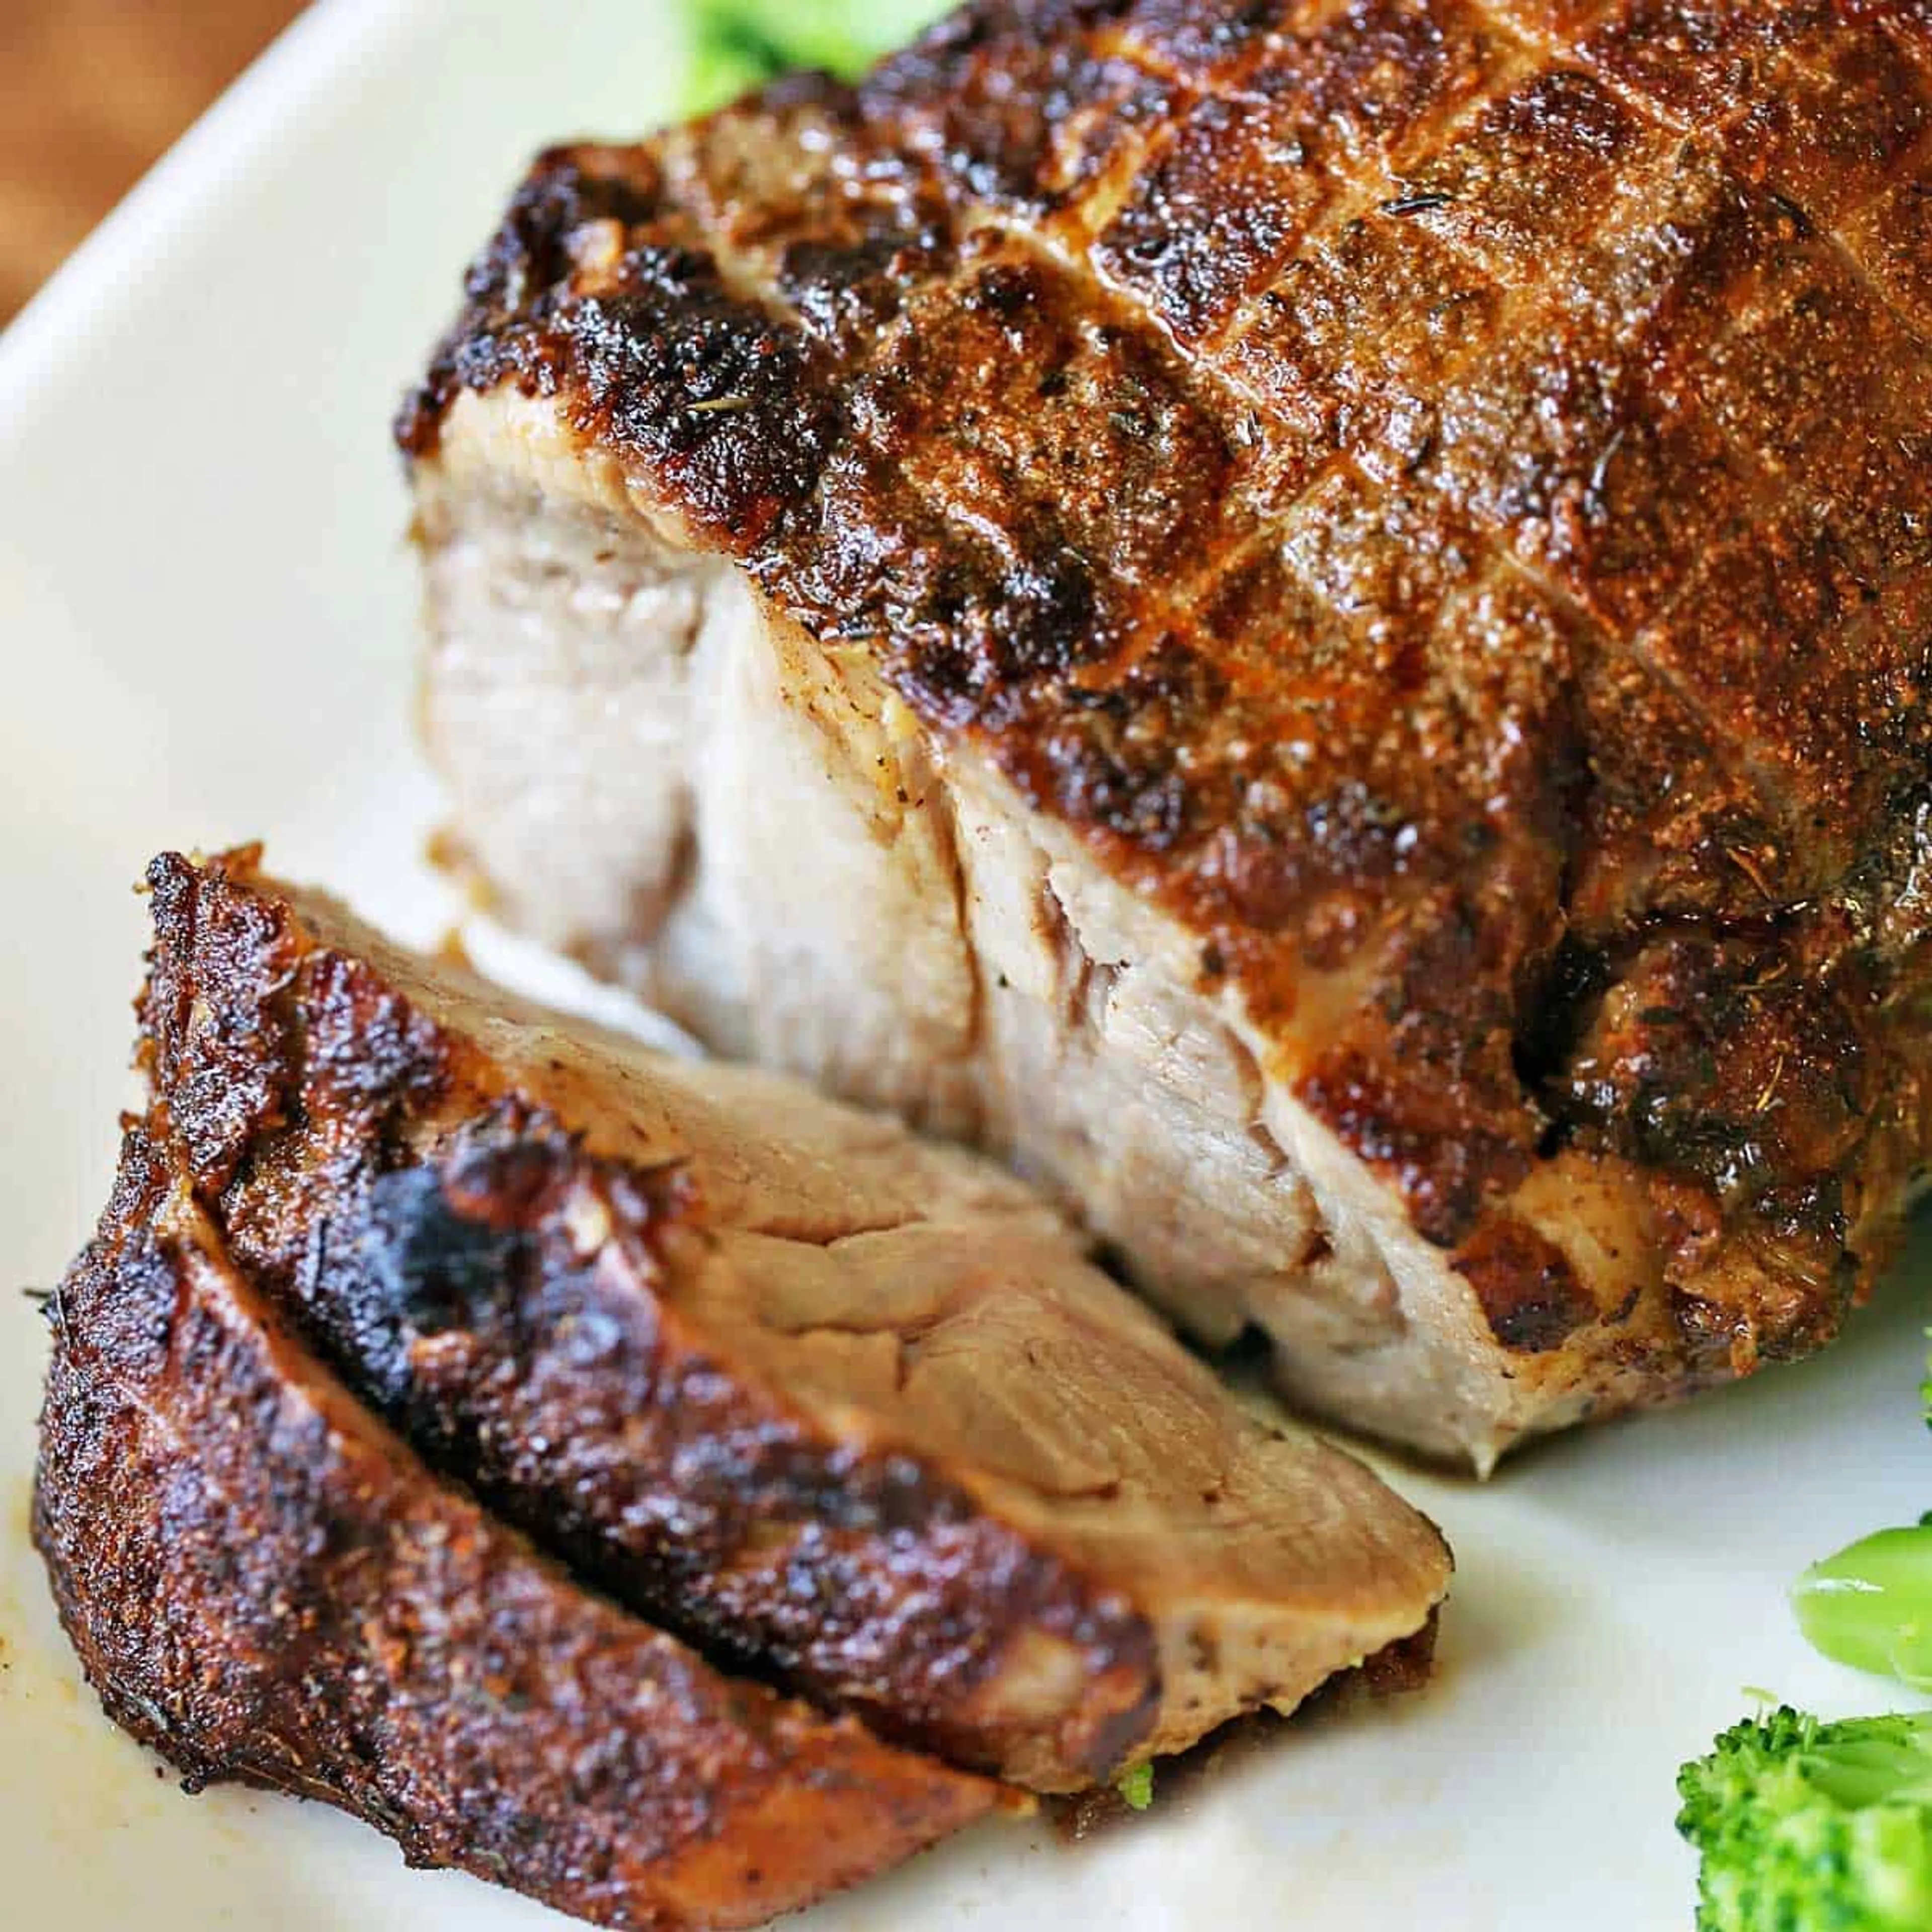 Easy Boneless Pork Roast